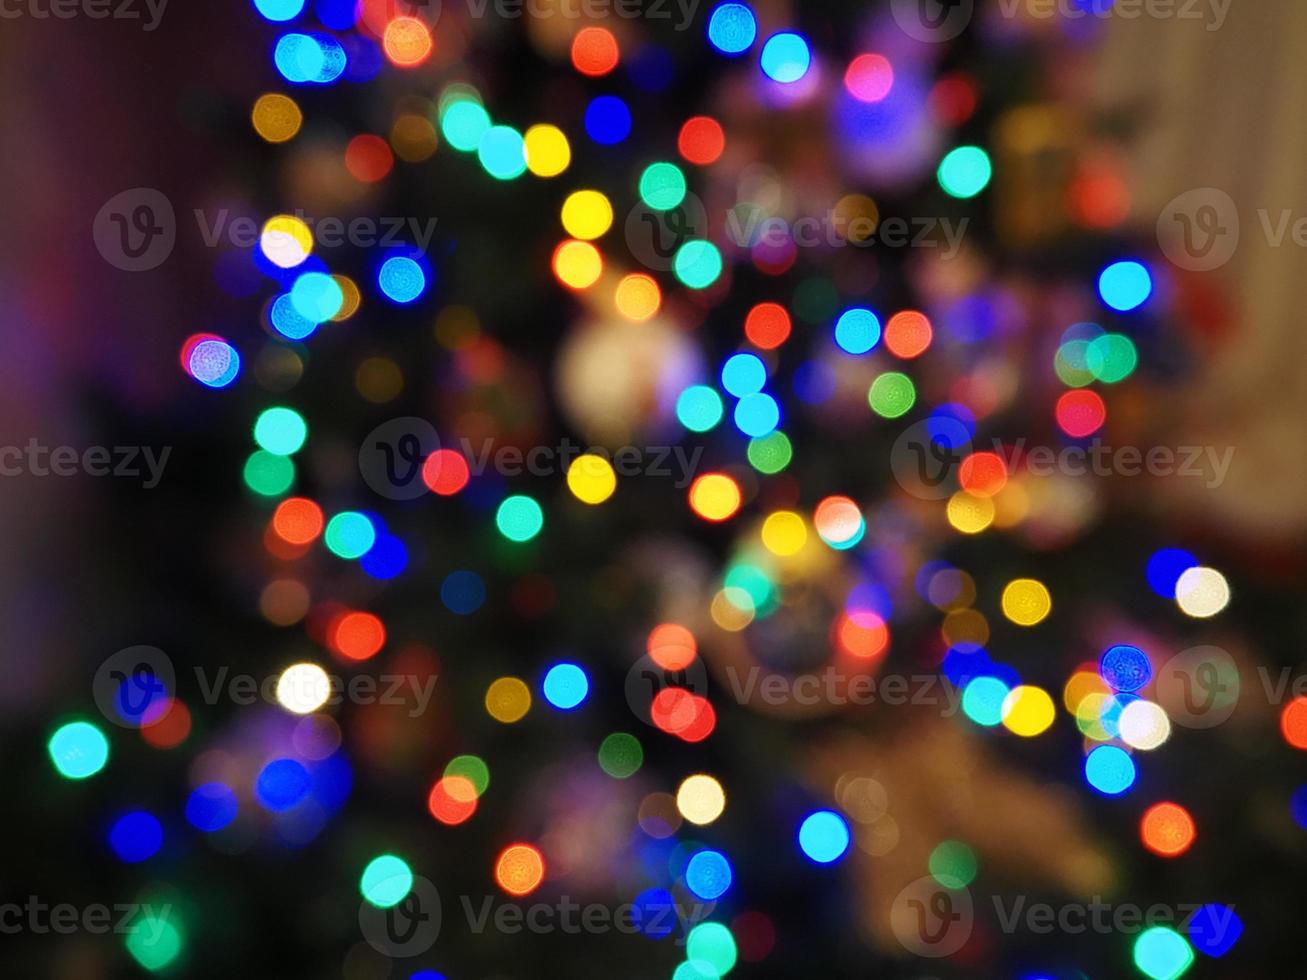 jul träd lampor fläck bakgrund foto